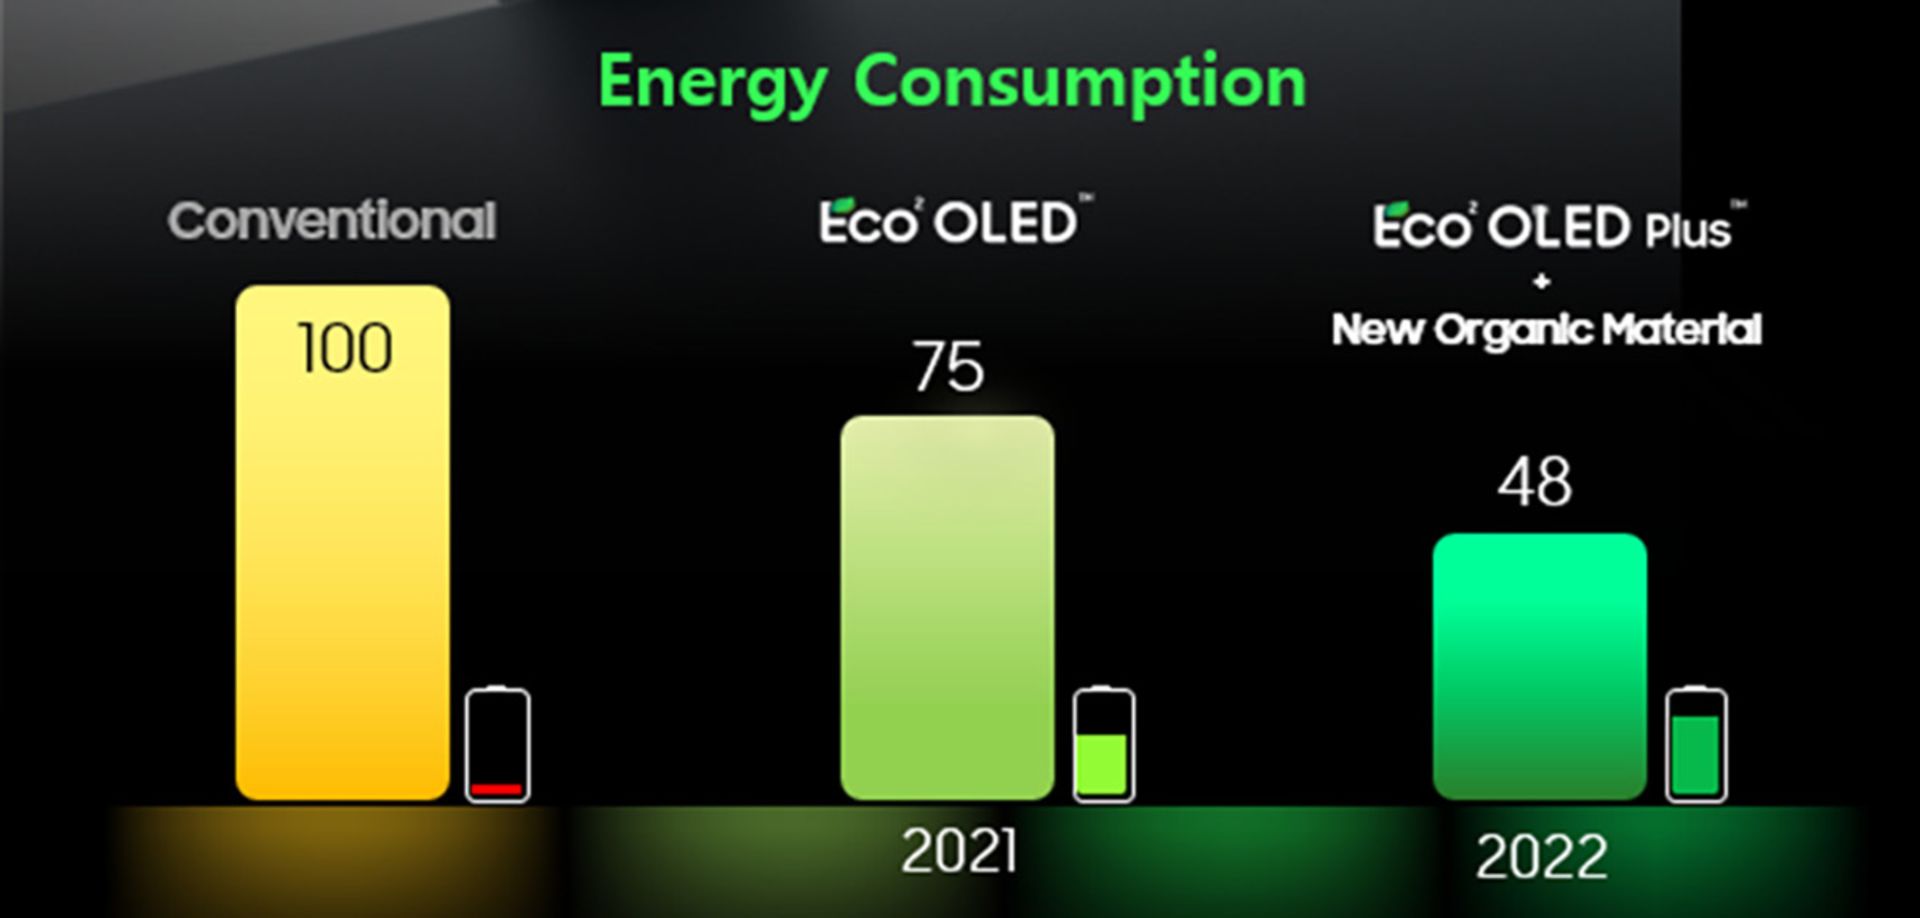 Eco2 OLED Plus